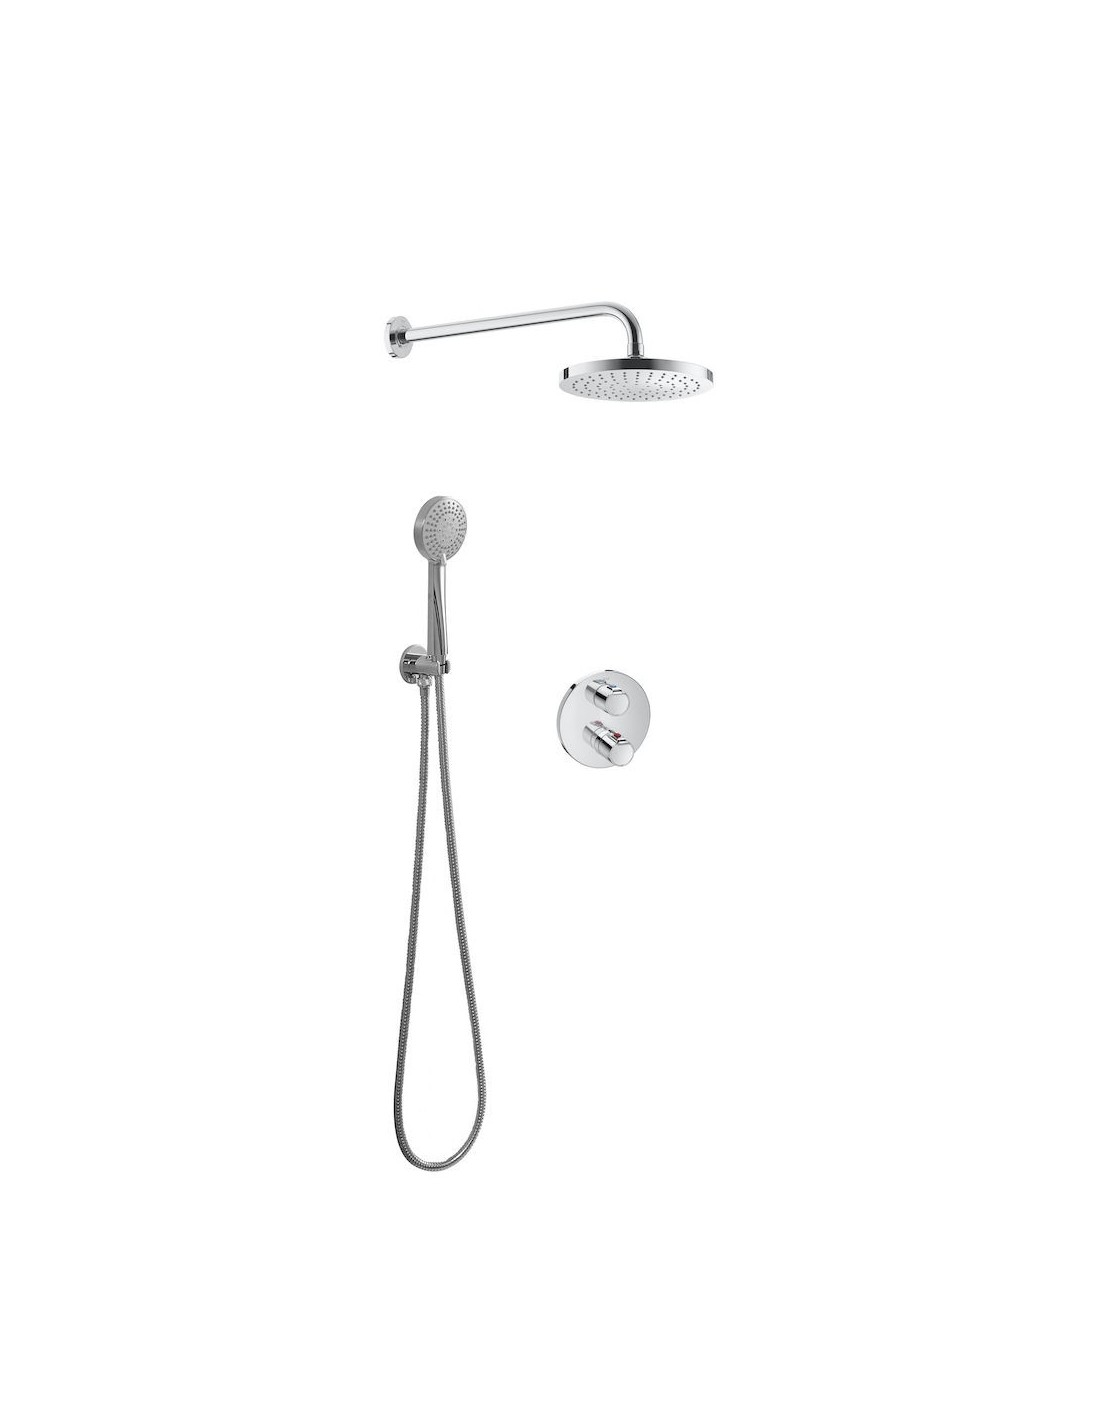 Grifo termostático para baño-ducha Roca T-2000 cromado